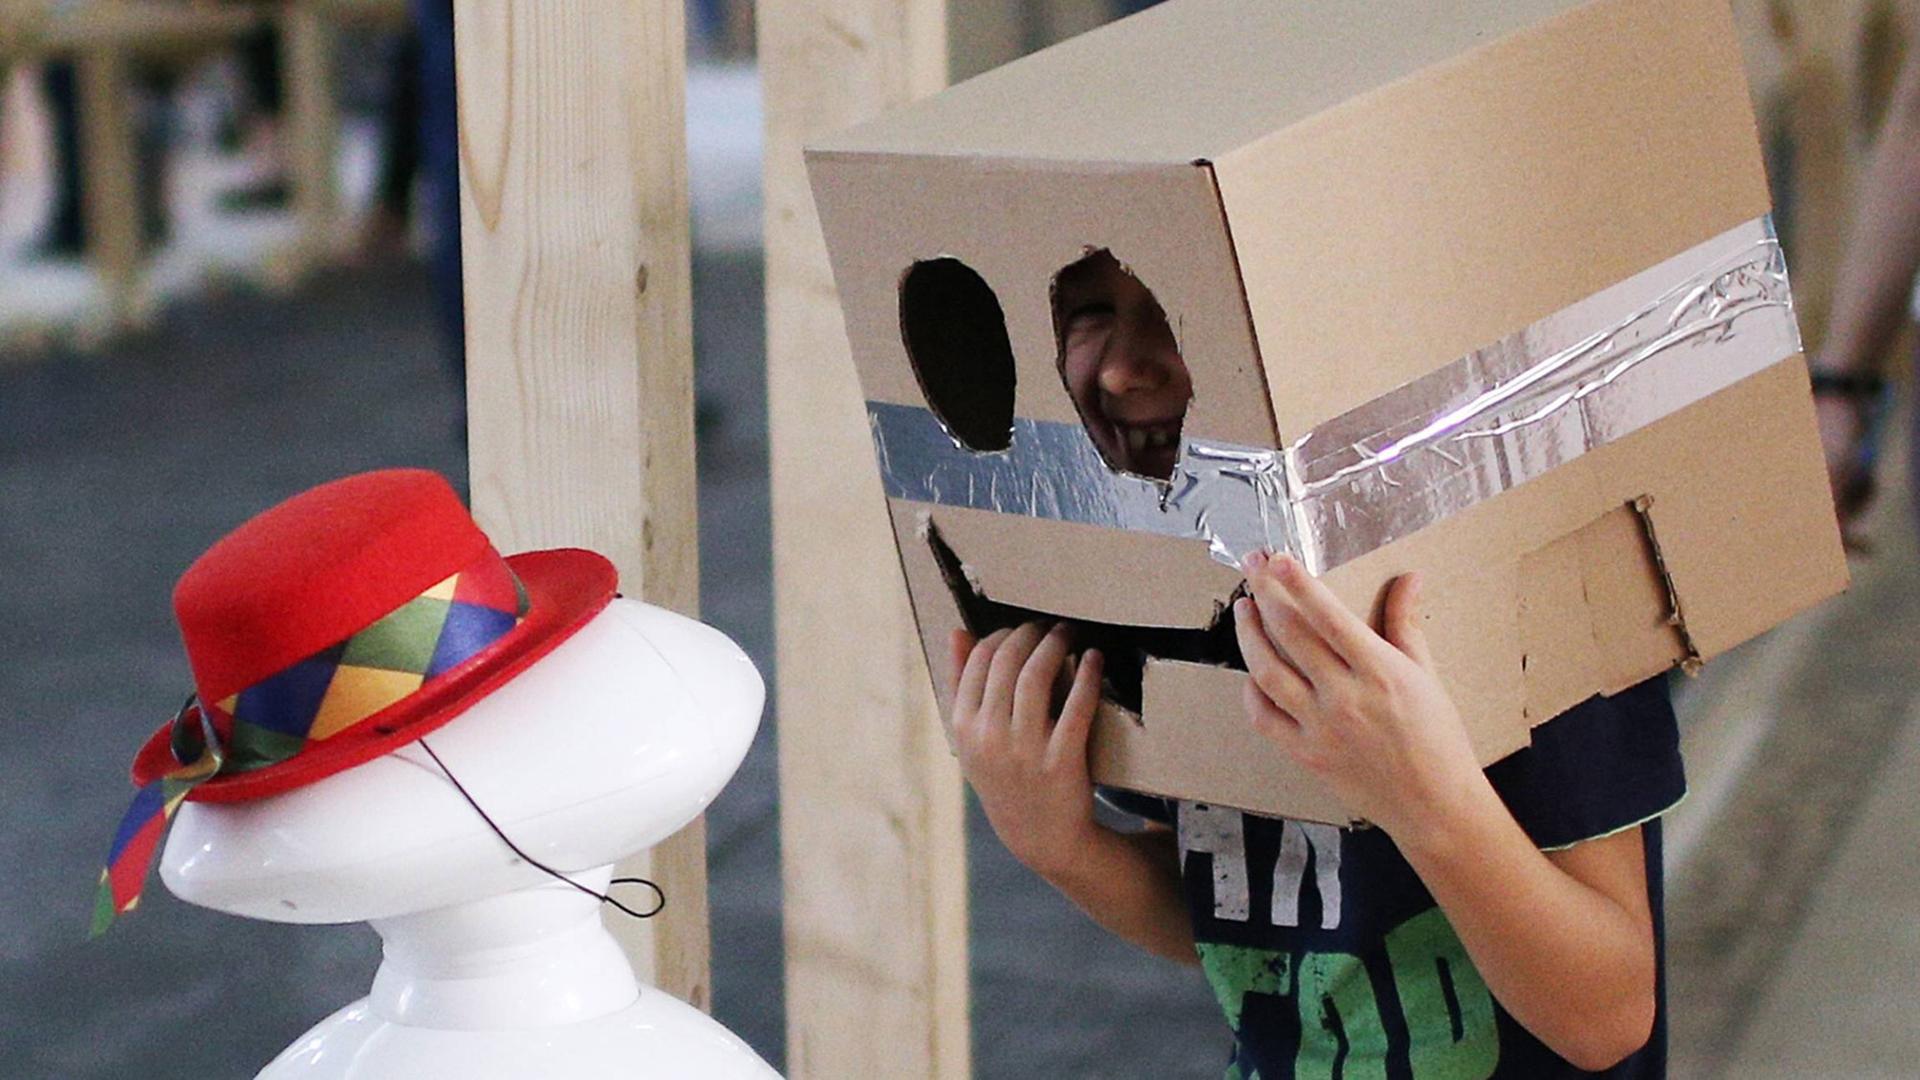 Ein Kind spricht mit einem Computer, während es selbst einen Pappkarton auf dem Kopf trägt, in dessen Front ein Gesicht geschnitten ist.